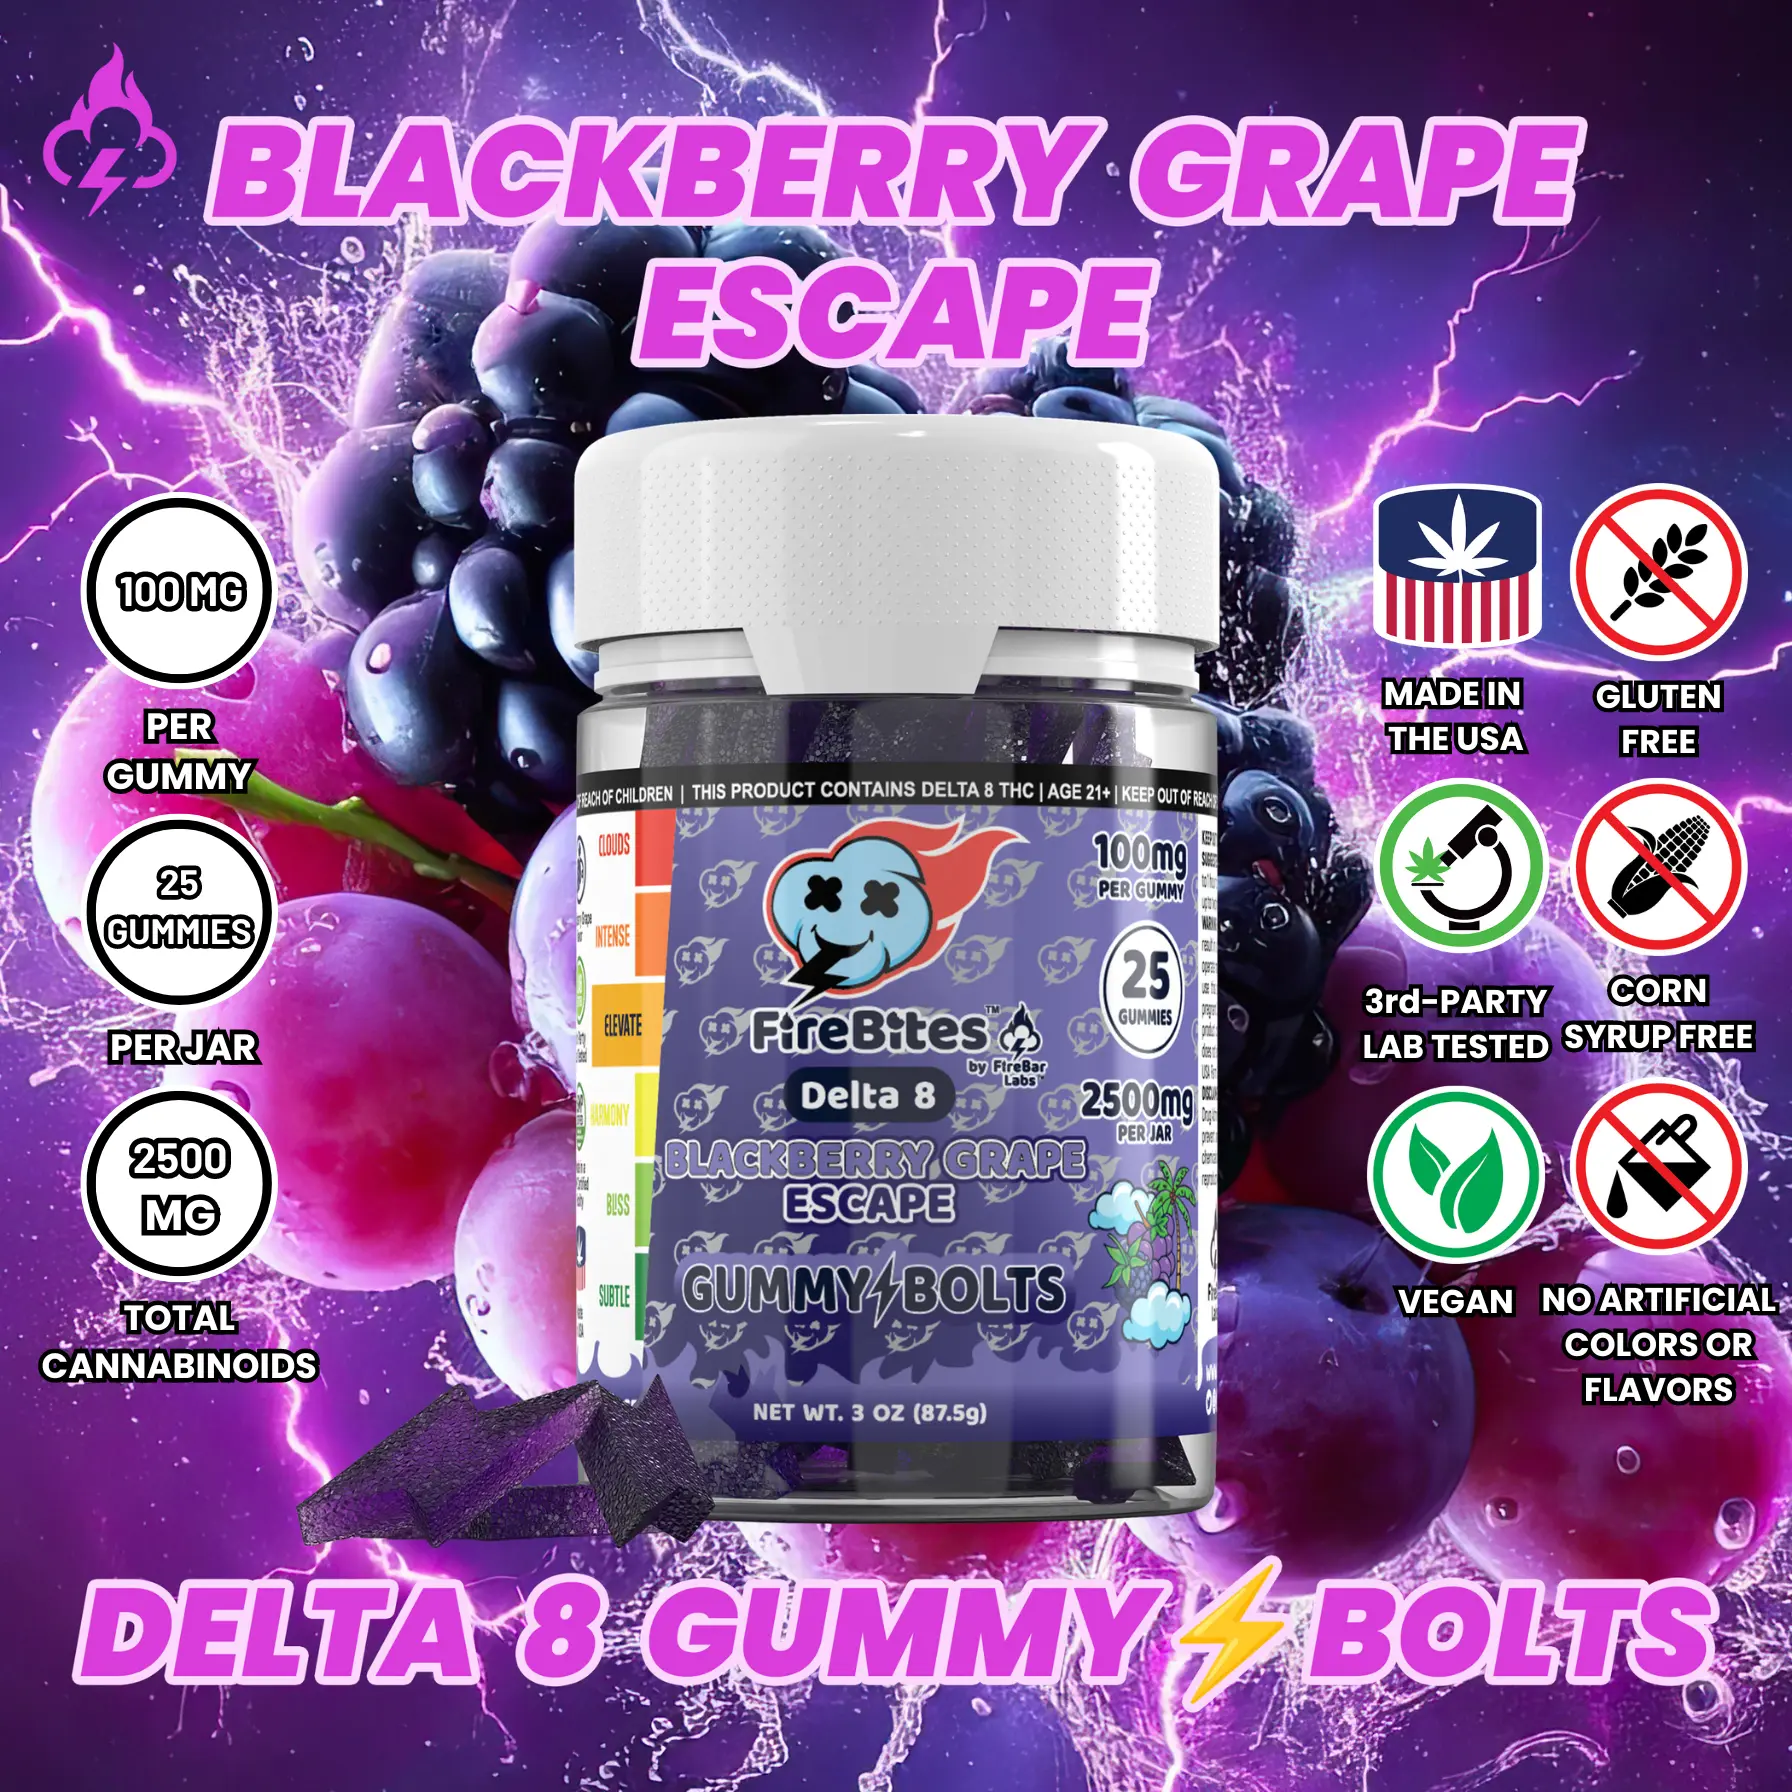 Delta 9 Gummies - Grape Escape for Vibrant Days Sativa